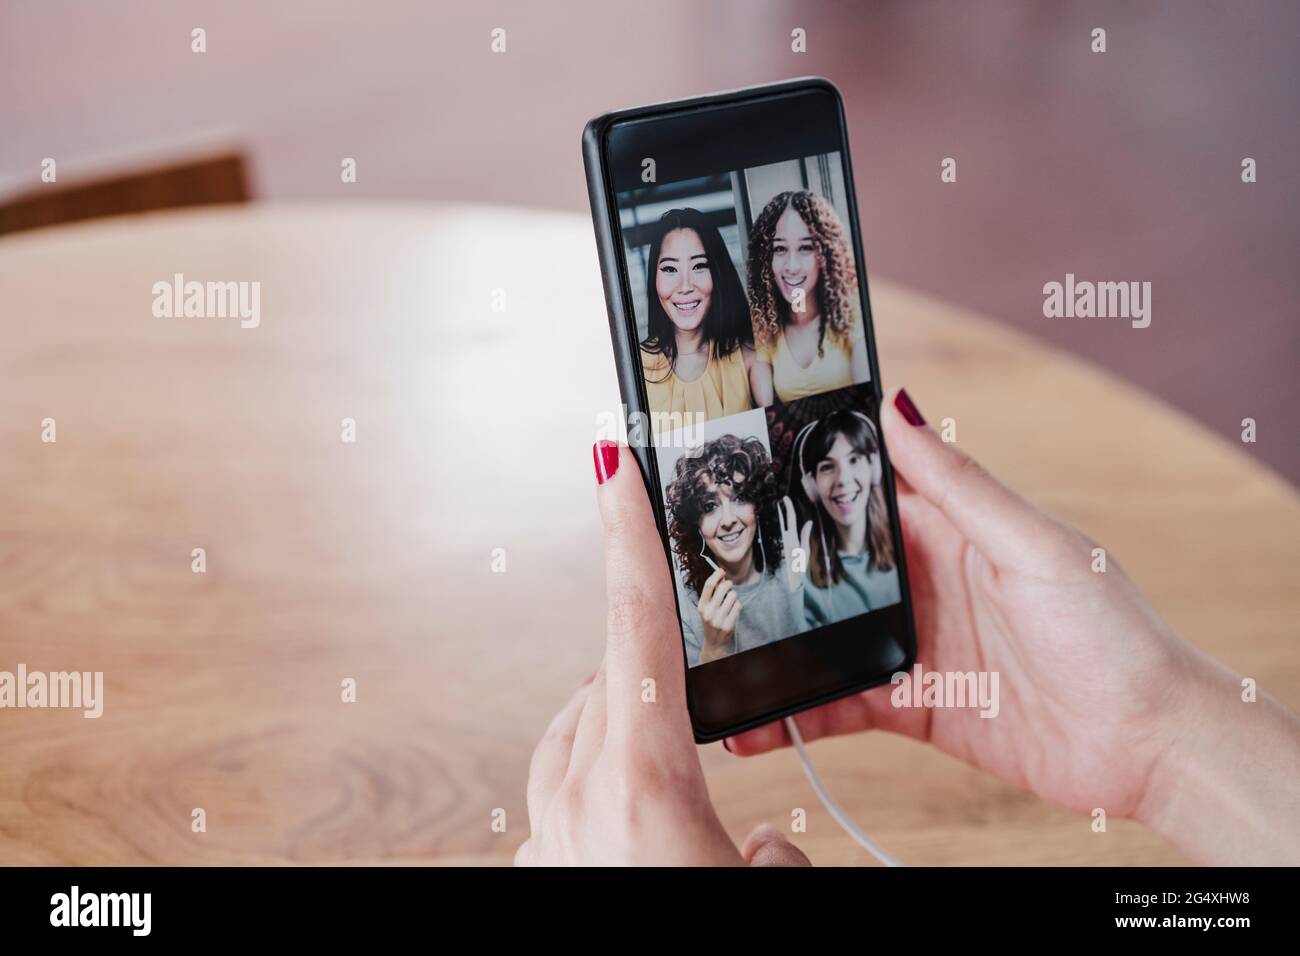 Une jeune femme parle avec des amis pendant un appel vidéo via un smartphone dans un café Banque D'Images